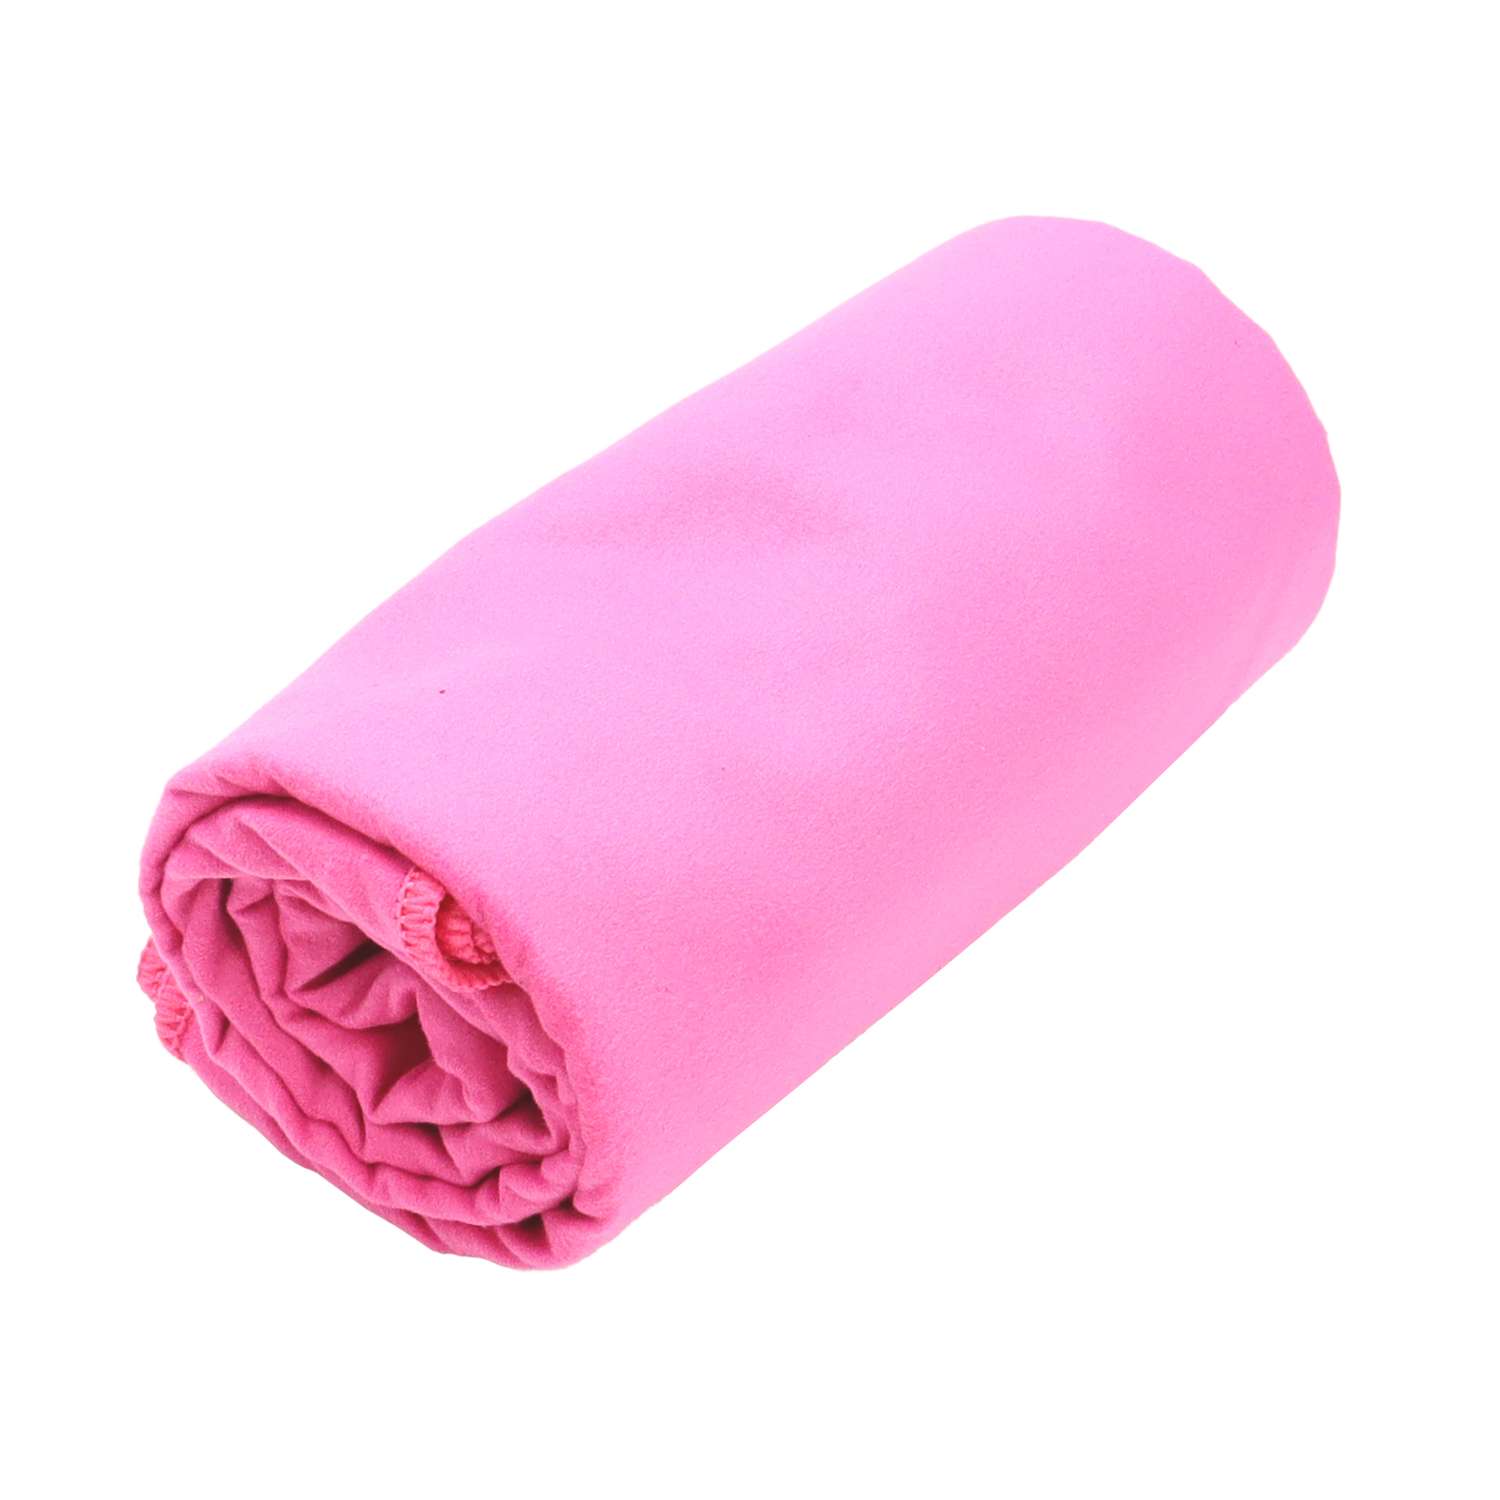 Полотенце ND Play спортивное из микрофибры 76*152 см цвет розовый - фото 2